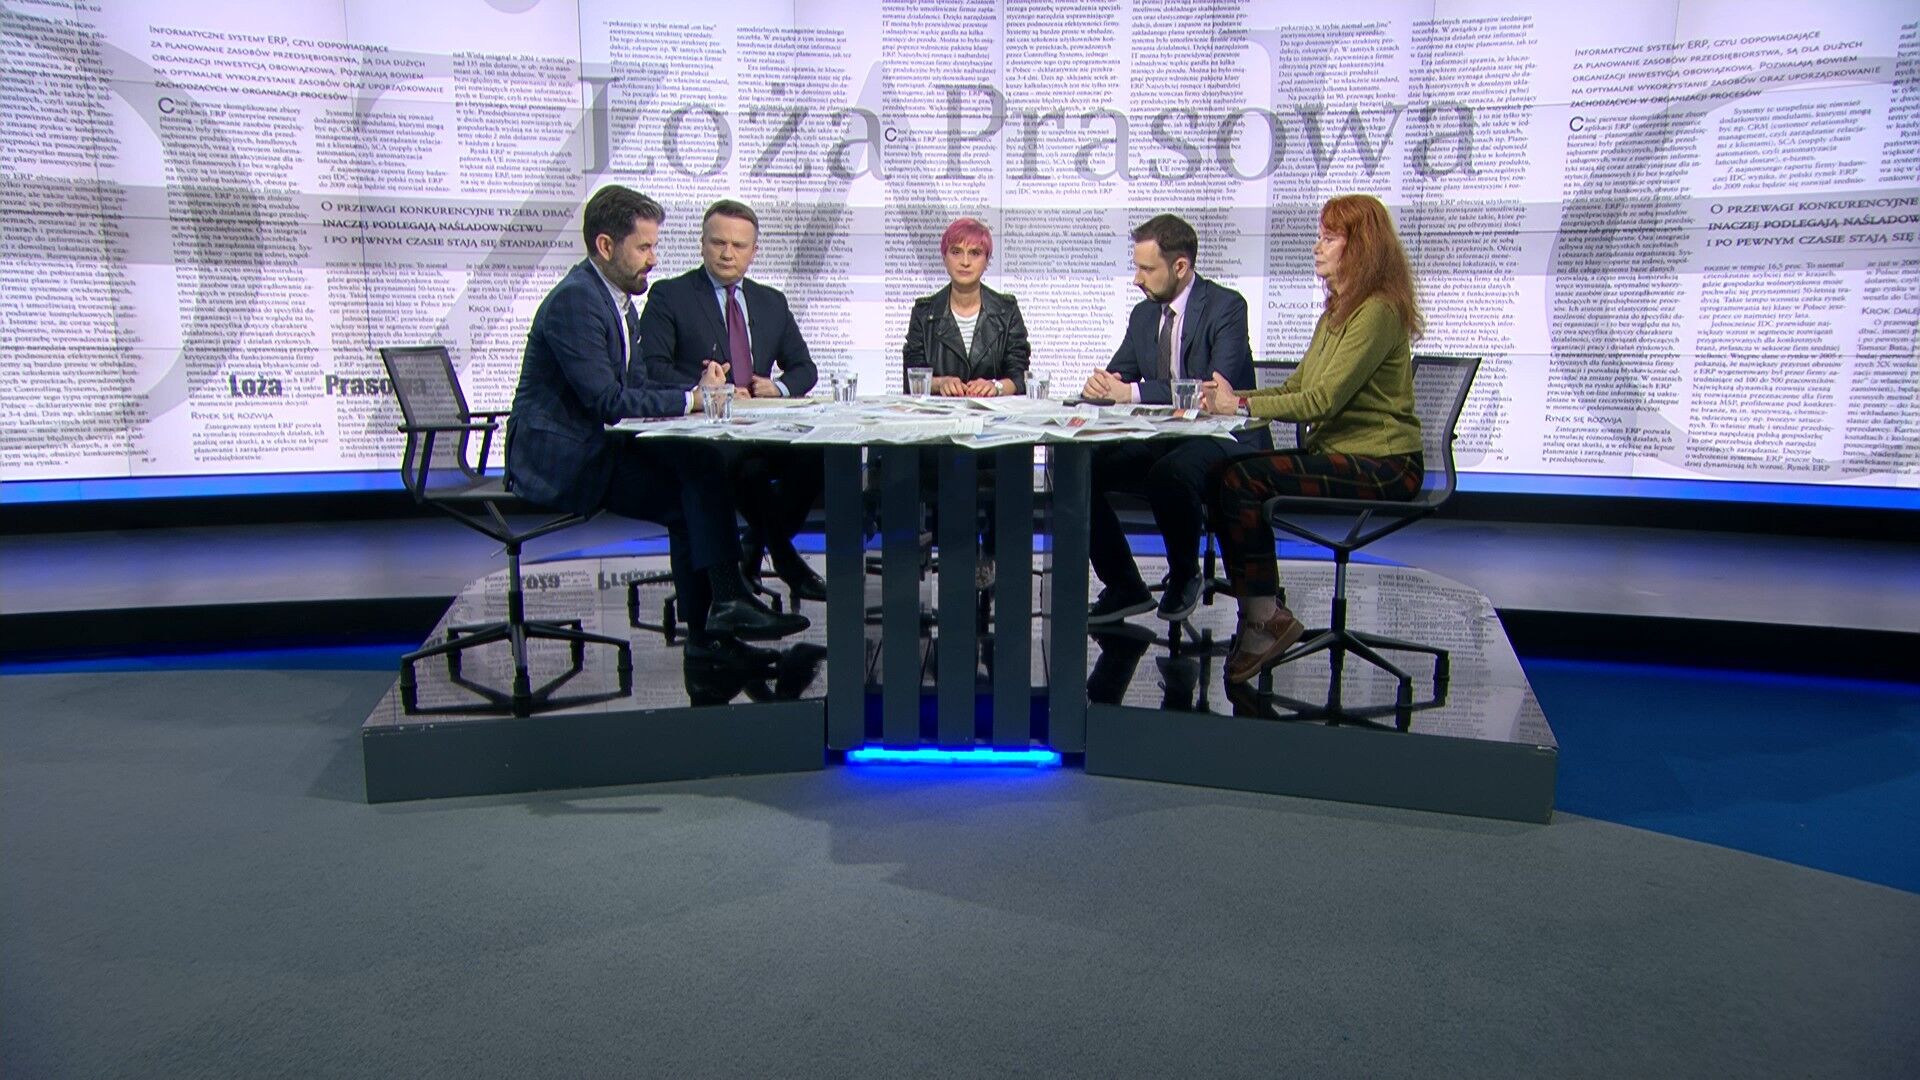 Andrzej Stankiewicz, Jacek Gądek, Ewa Siedlecka, Agnieszka Wiśniewska